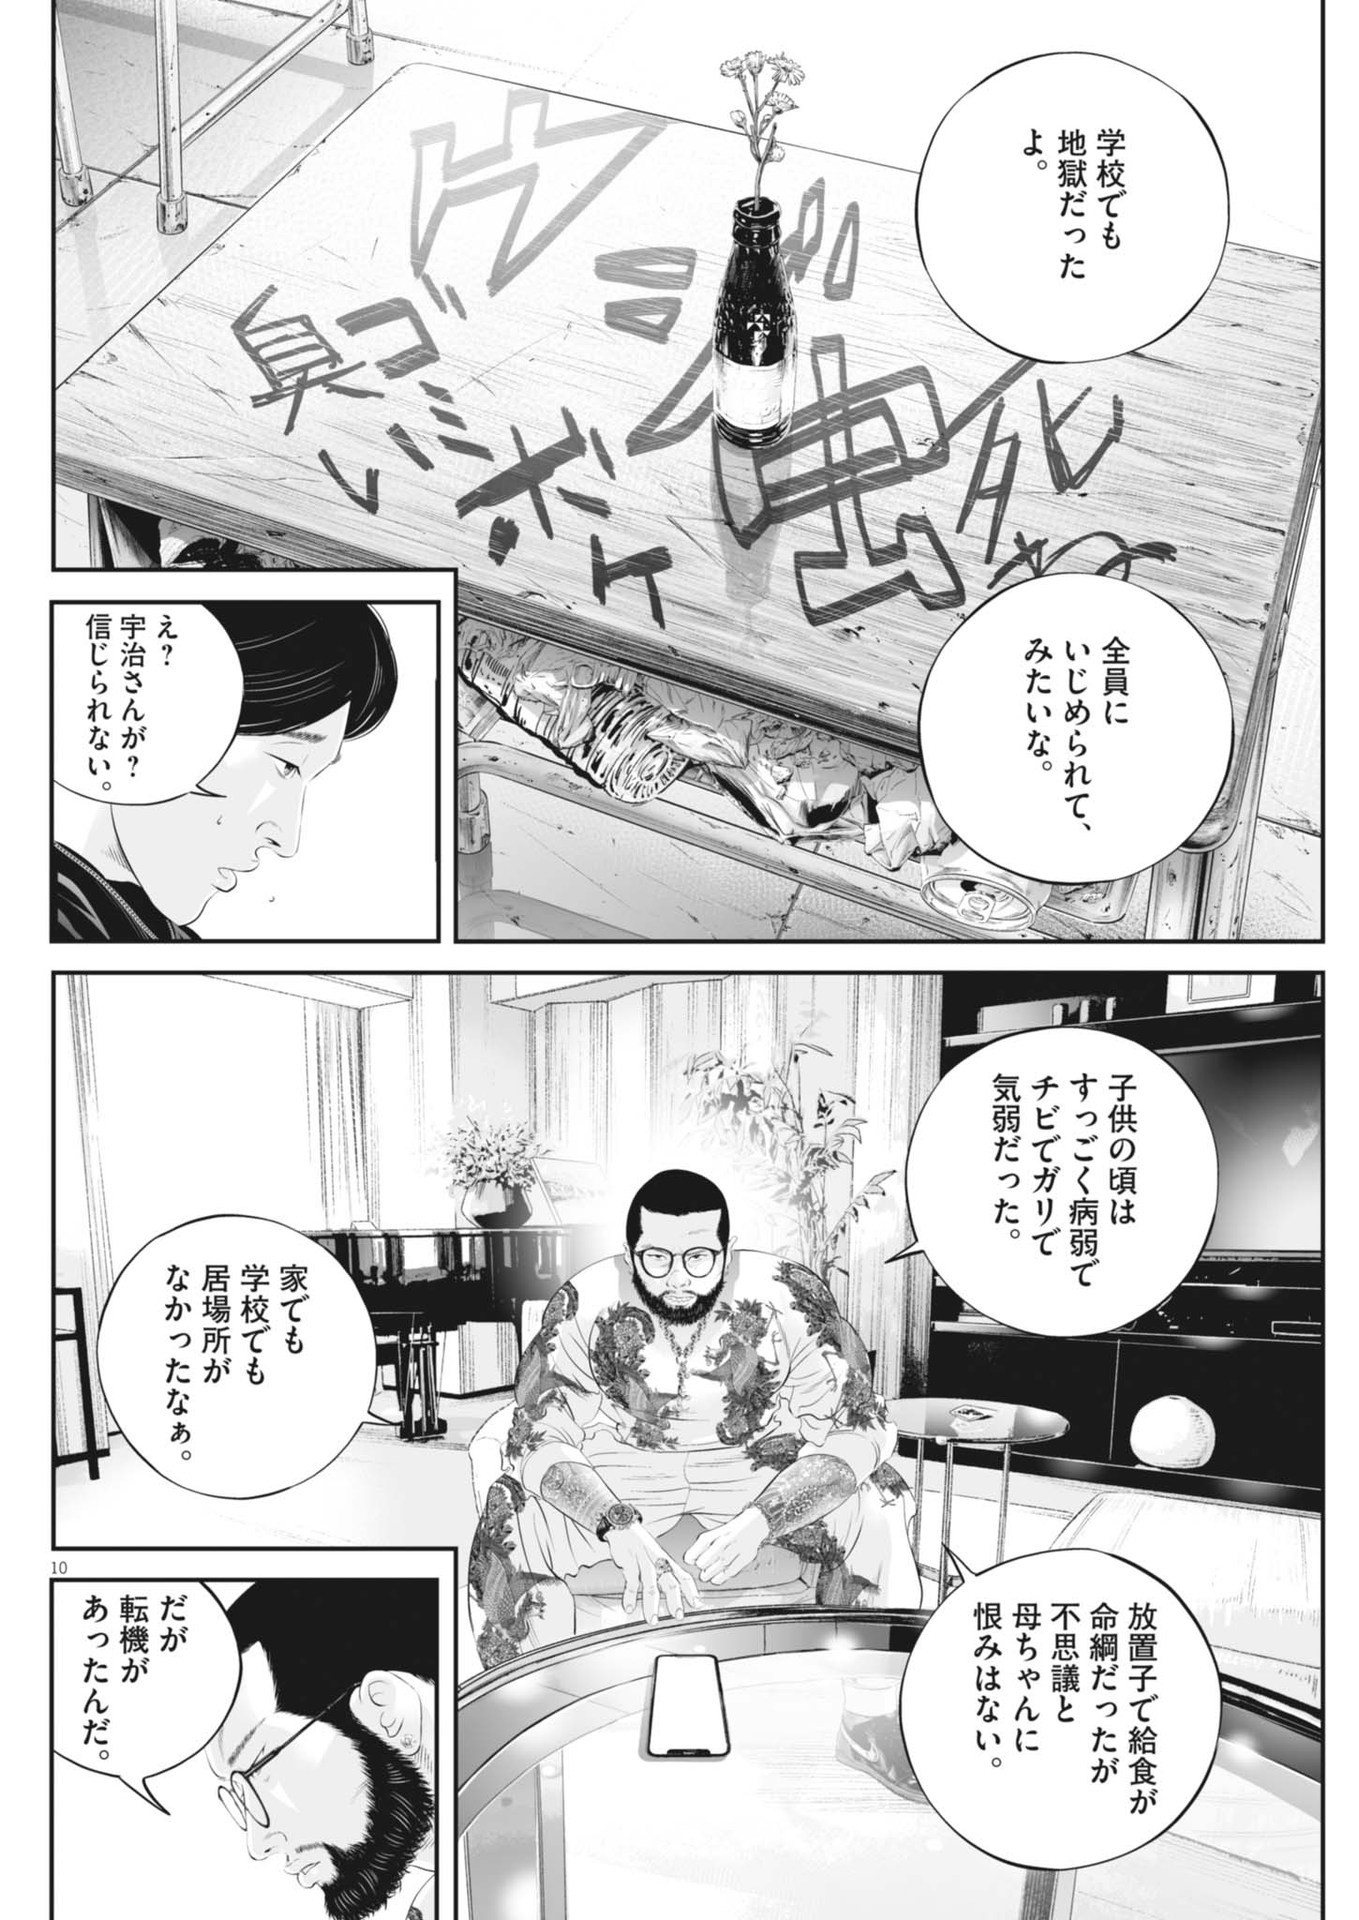 Kujou no Taizai - Chapter 103 - Page 10